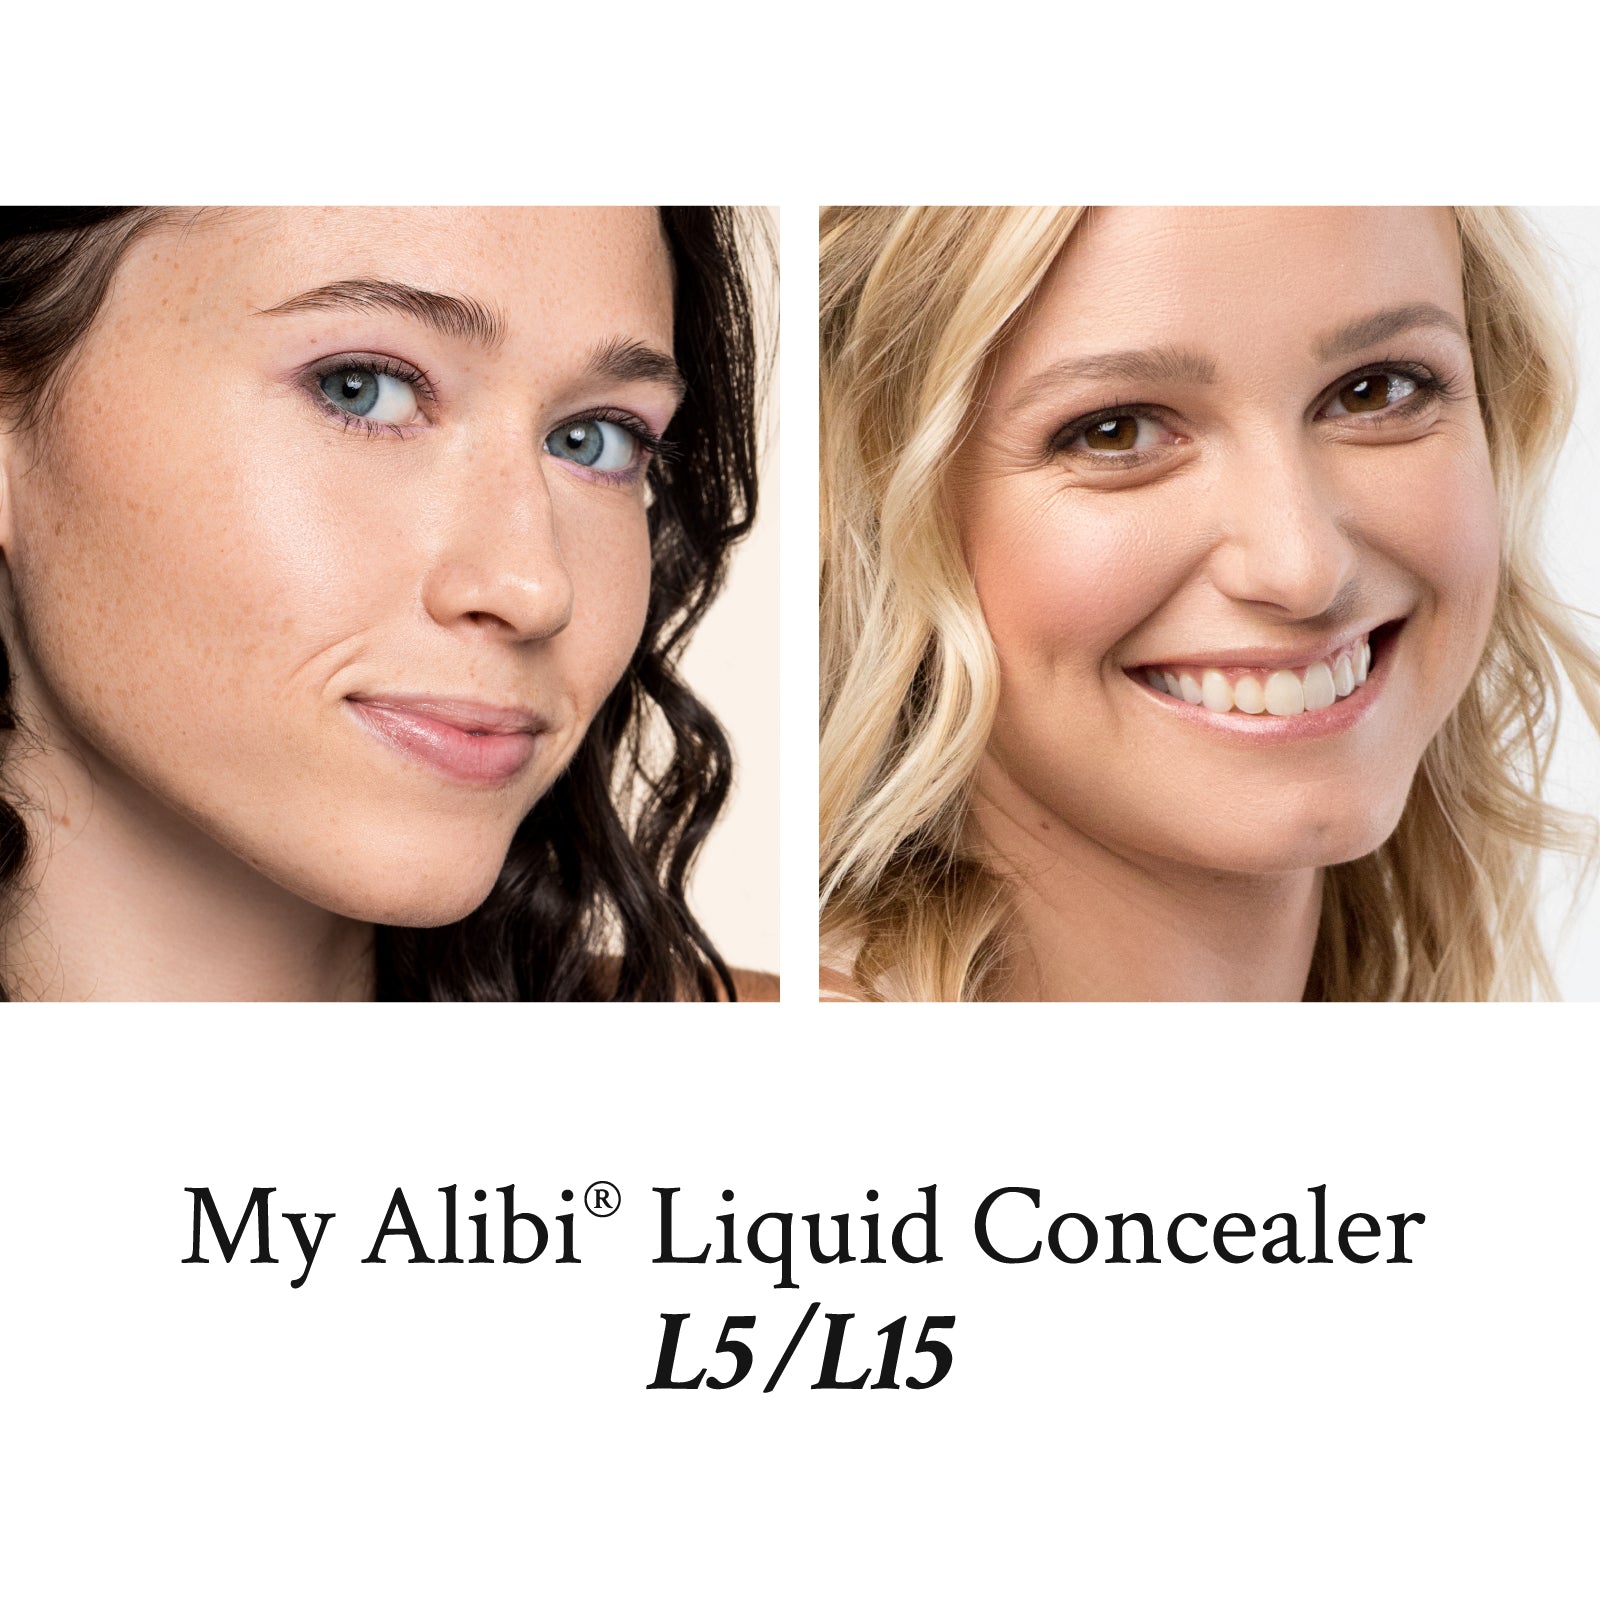 My Alibi® Liquid Concealer